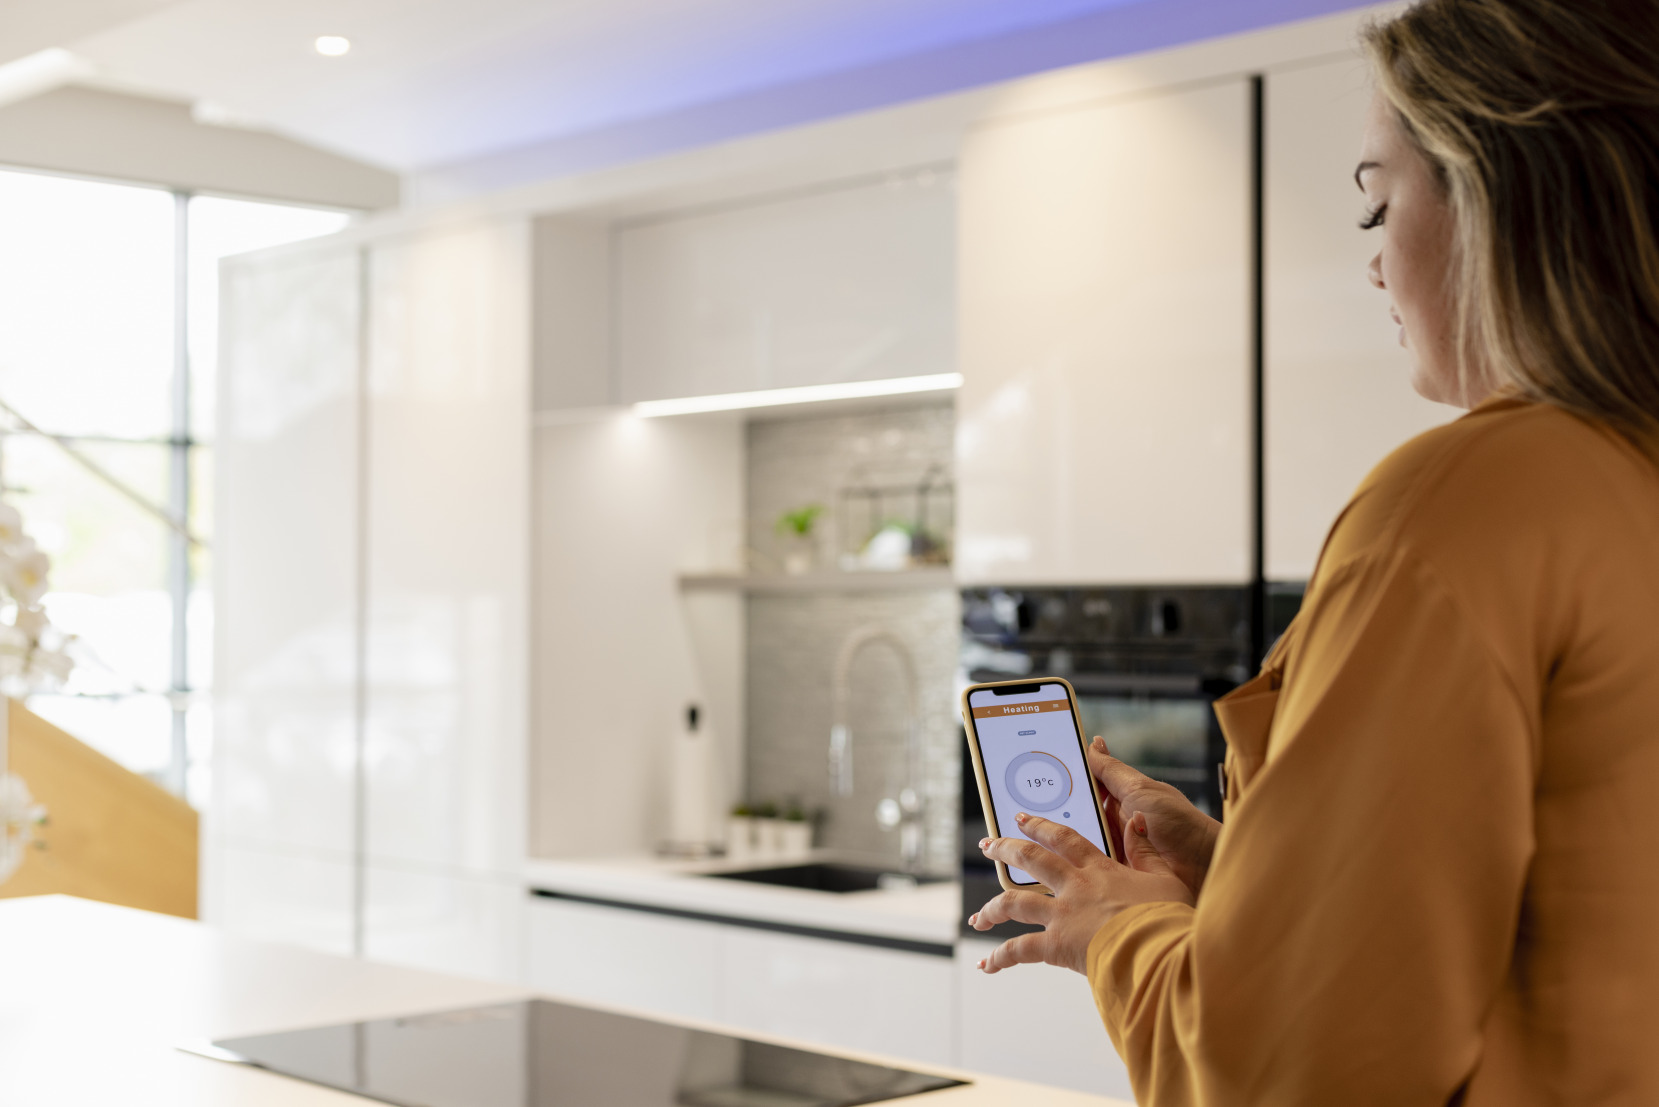 Un·e propriétaire se tient dans une cuisine blanche contemporaine et contrôle les appareils électroménagers avec une application sur son téléphone.